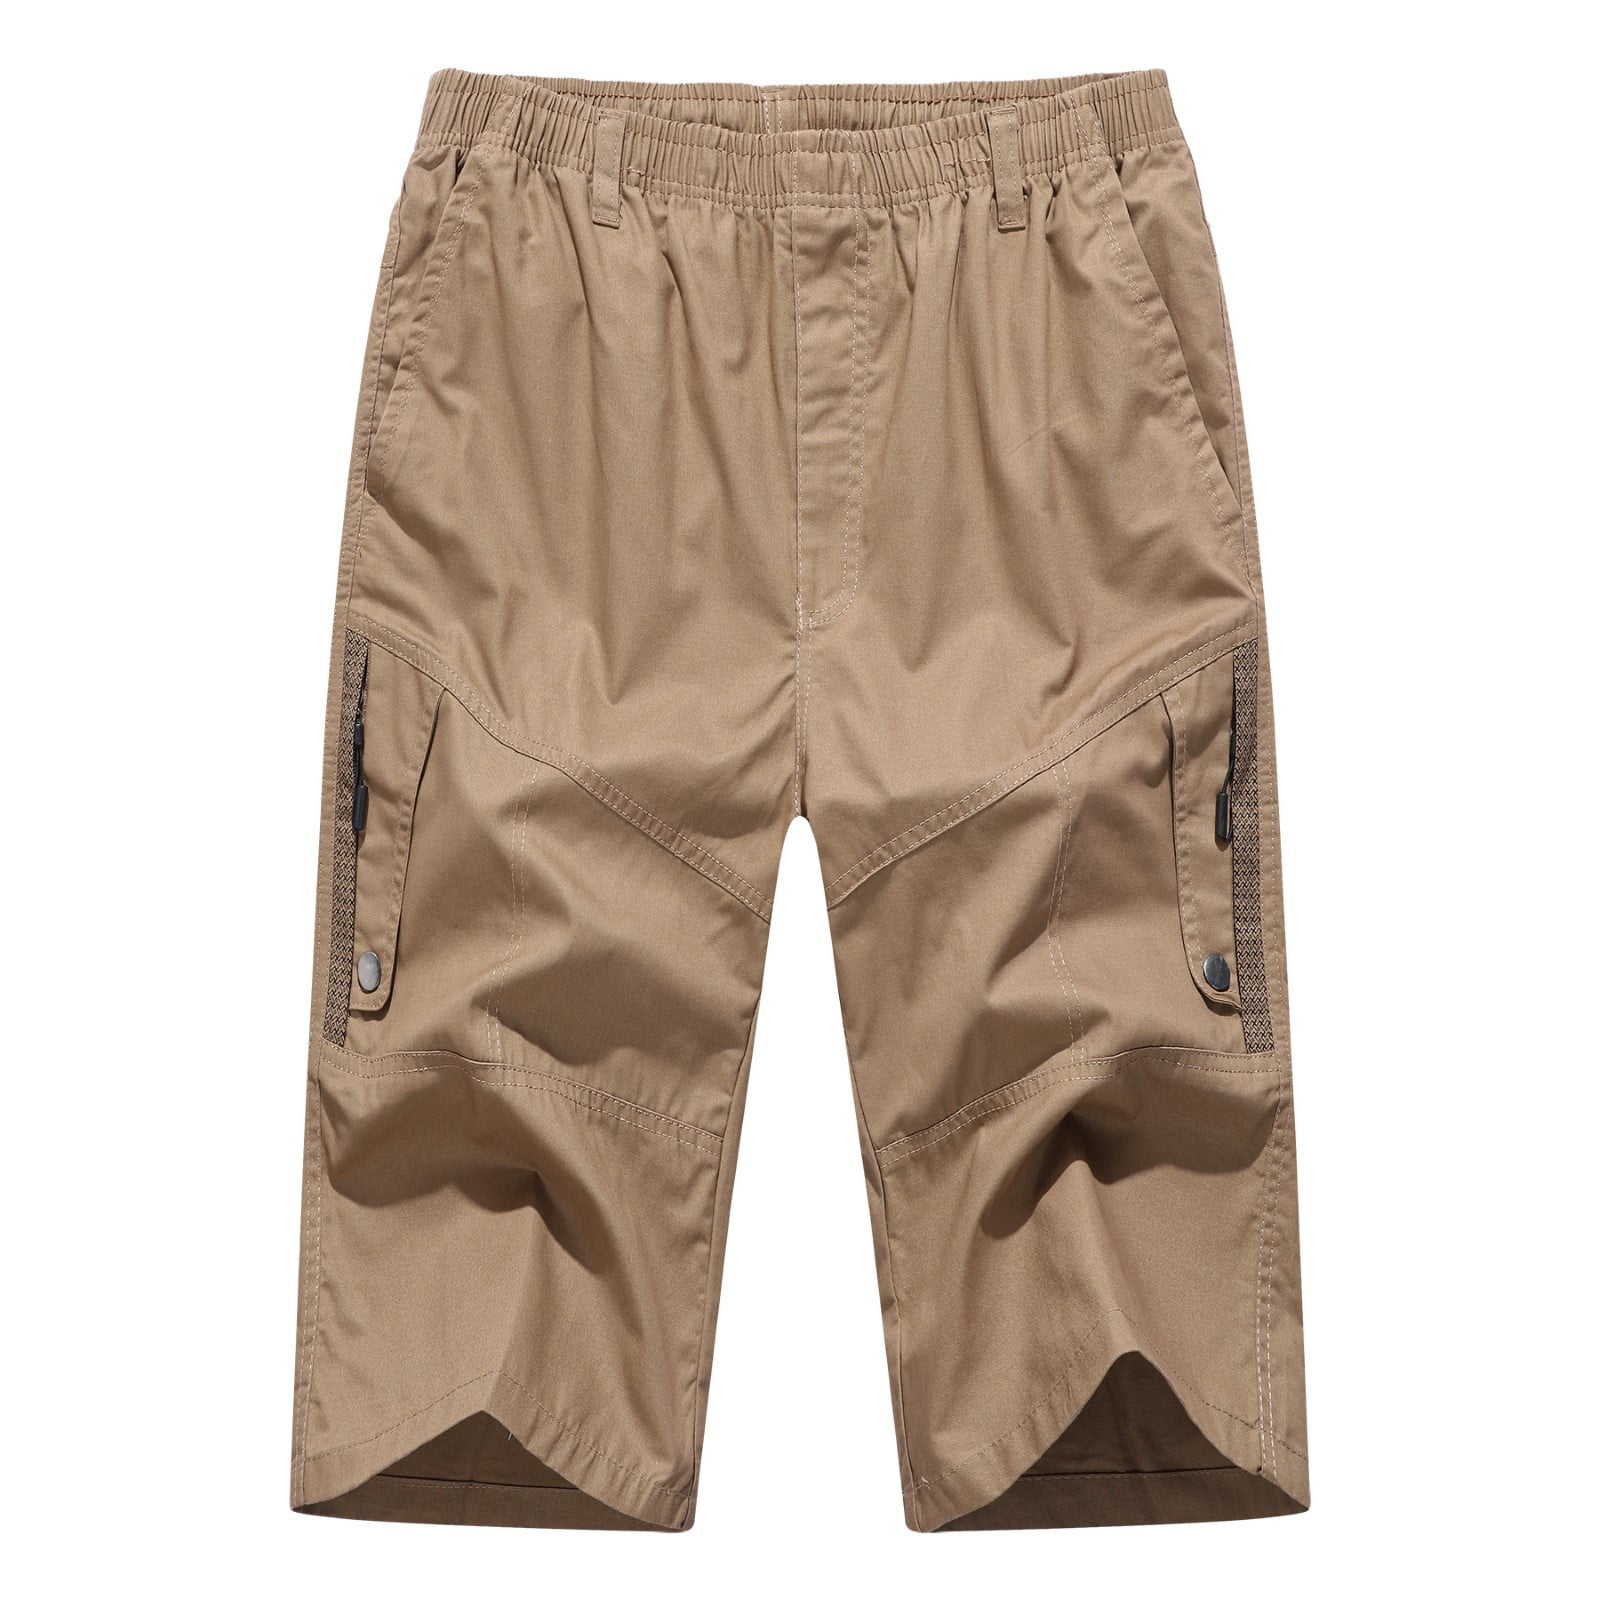 zuwimk Cargo Shorts For Men,Men's Waterproof Tactical Shorts Outdoor ...